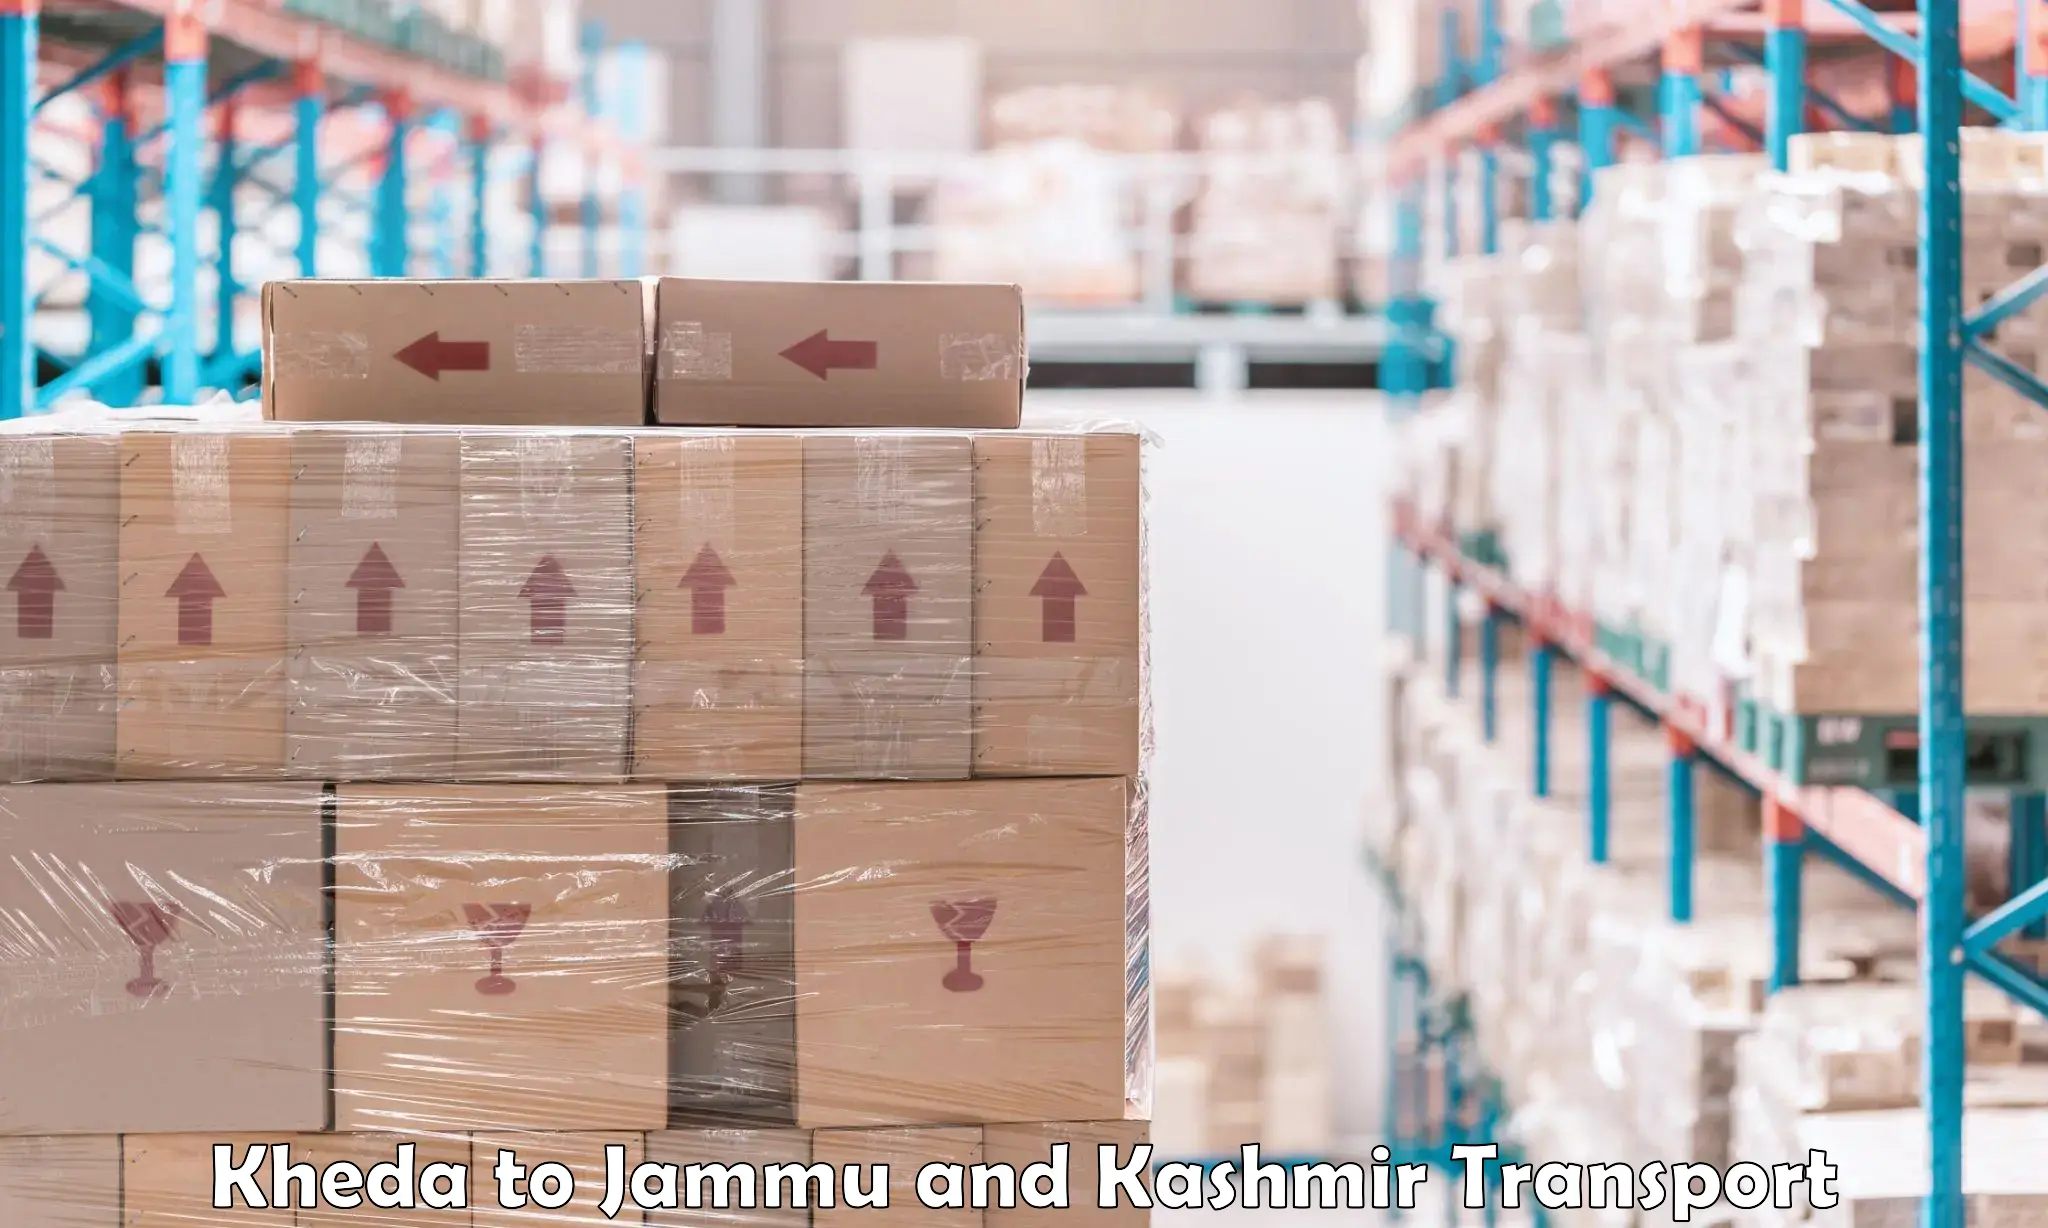 Shipping partner Kheda to IIT Jammu